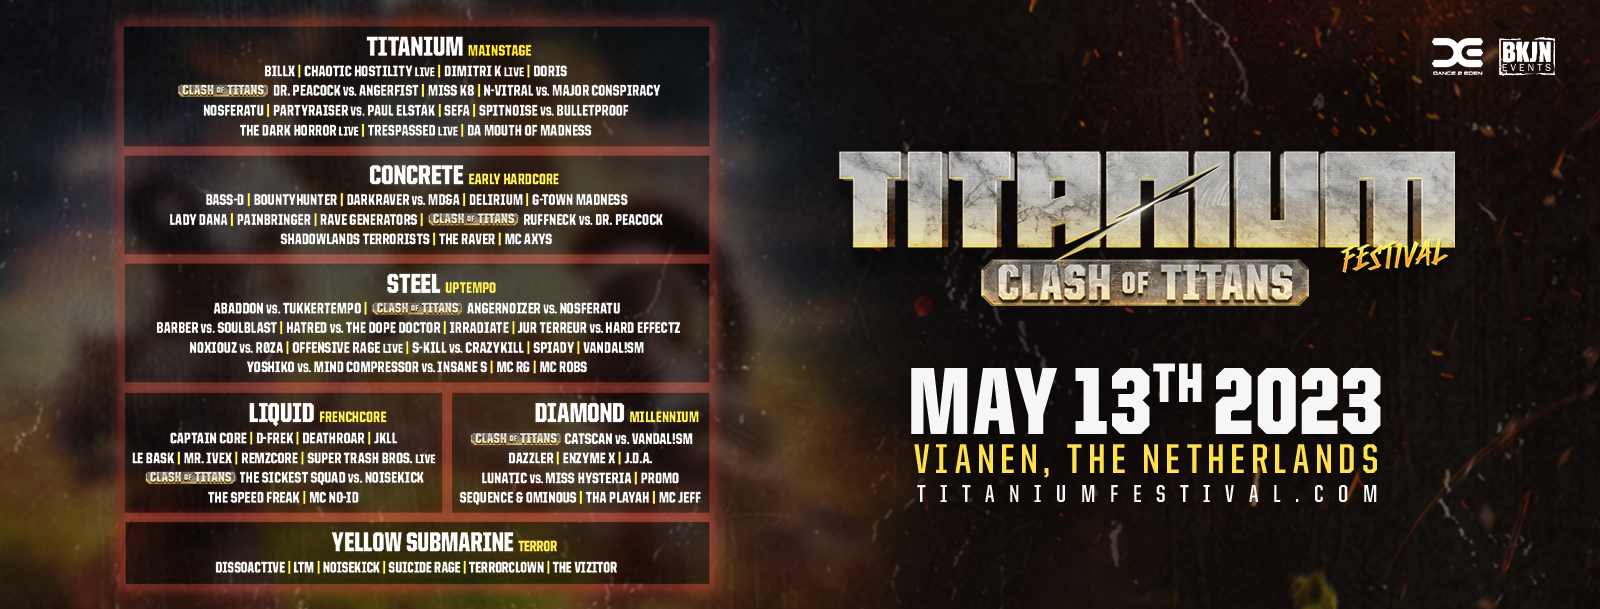 titanium-festival-clash-of-the-titans-13-05-2023